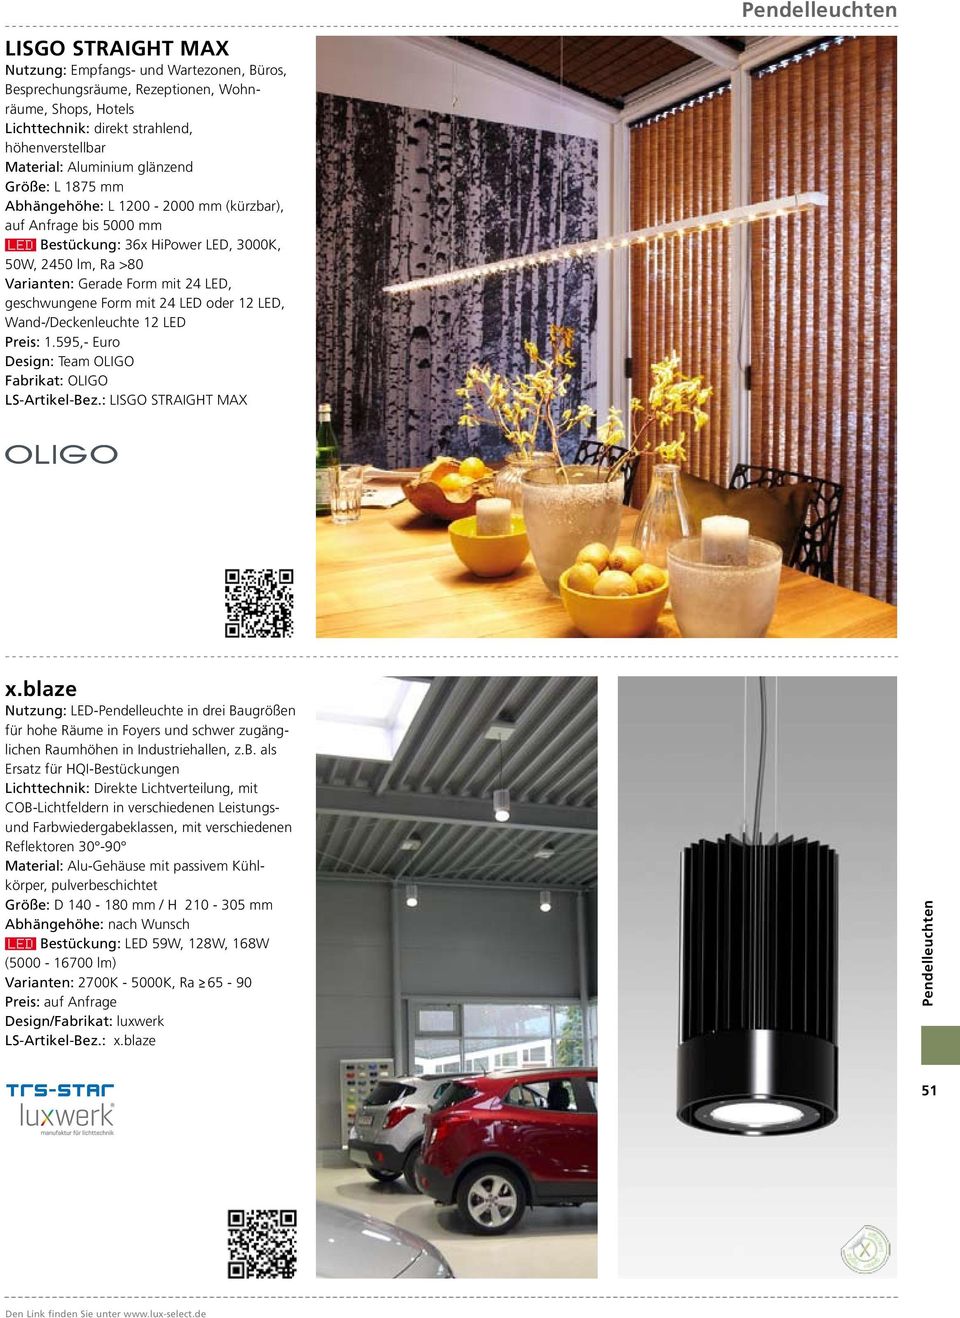 Wand-/Deckenleuchte 12 LED Preis: 1.595,- Euro LS-Artikel-Bez.: LISGO STRAIGHT MAX x.